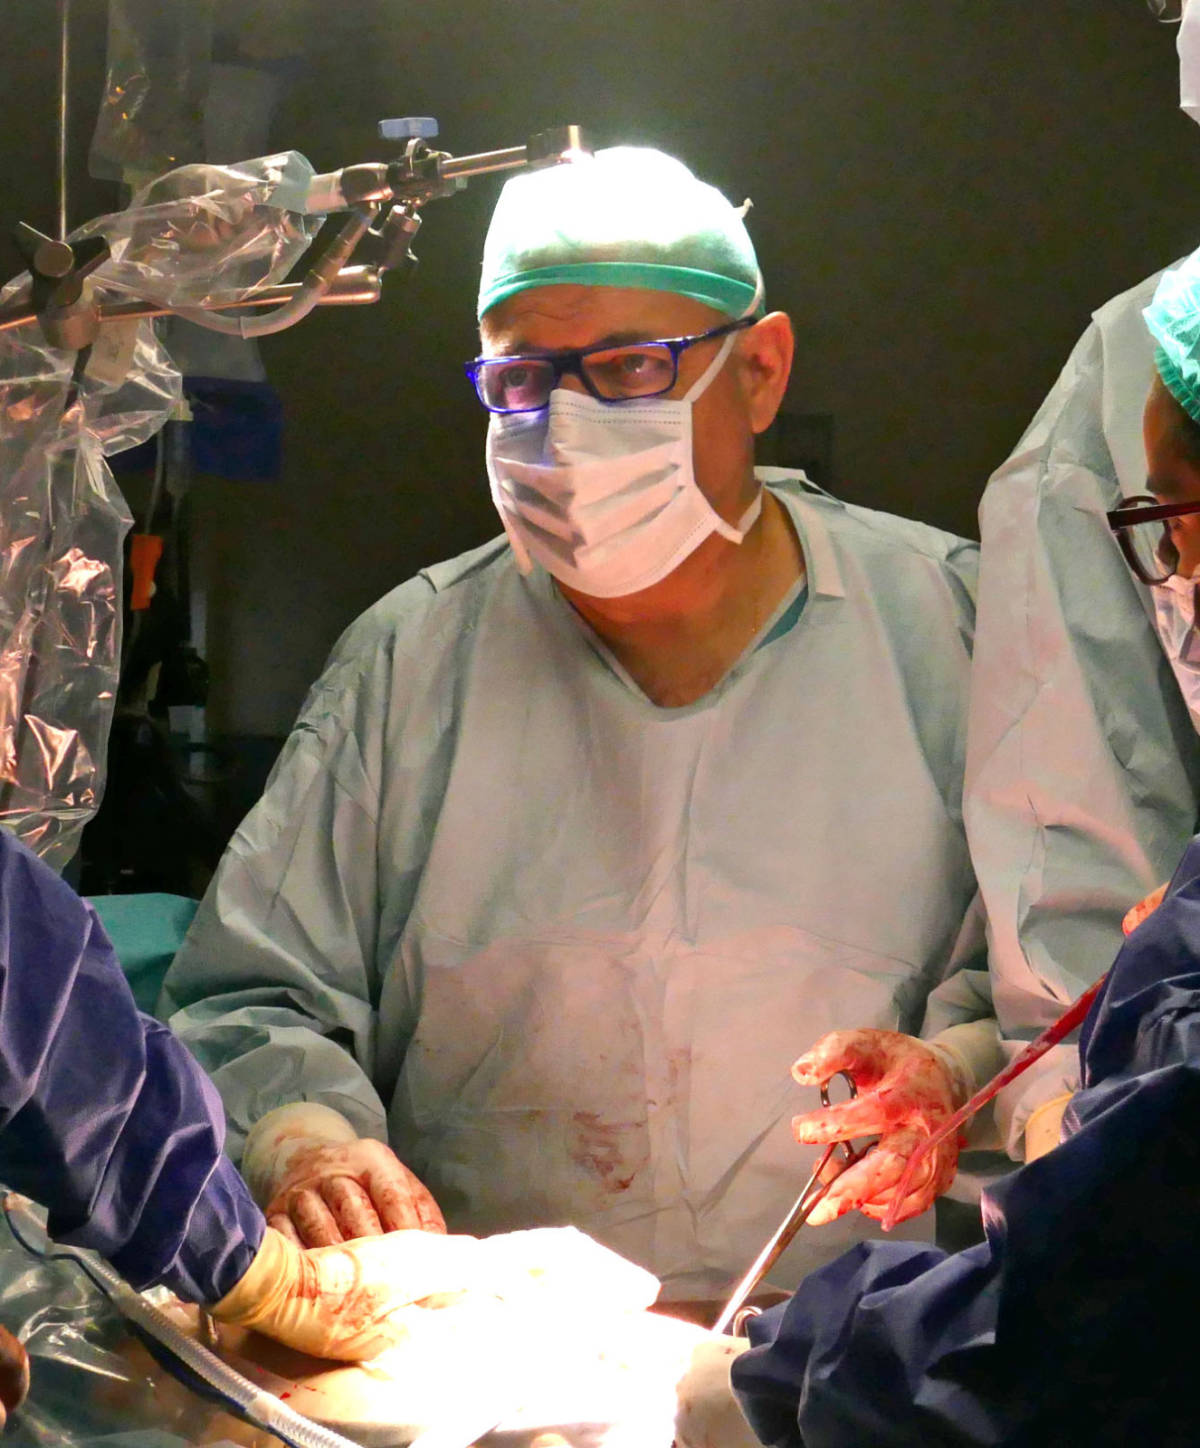 El doctor Llueca, durante una intervención quirúrgica (foto: Hospital General Universitari de Castelló)